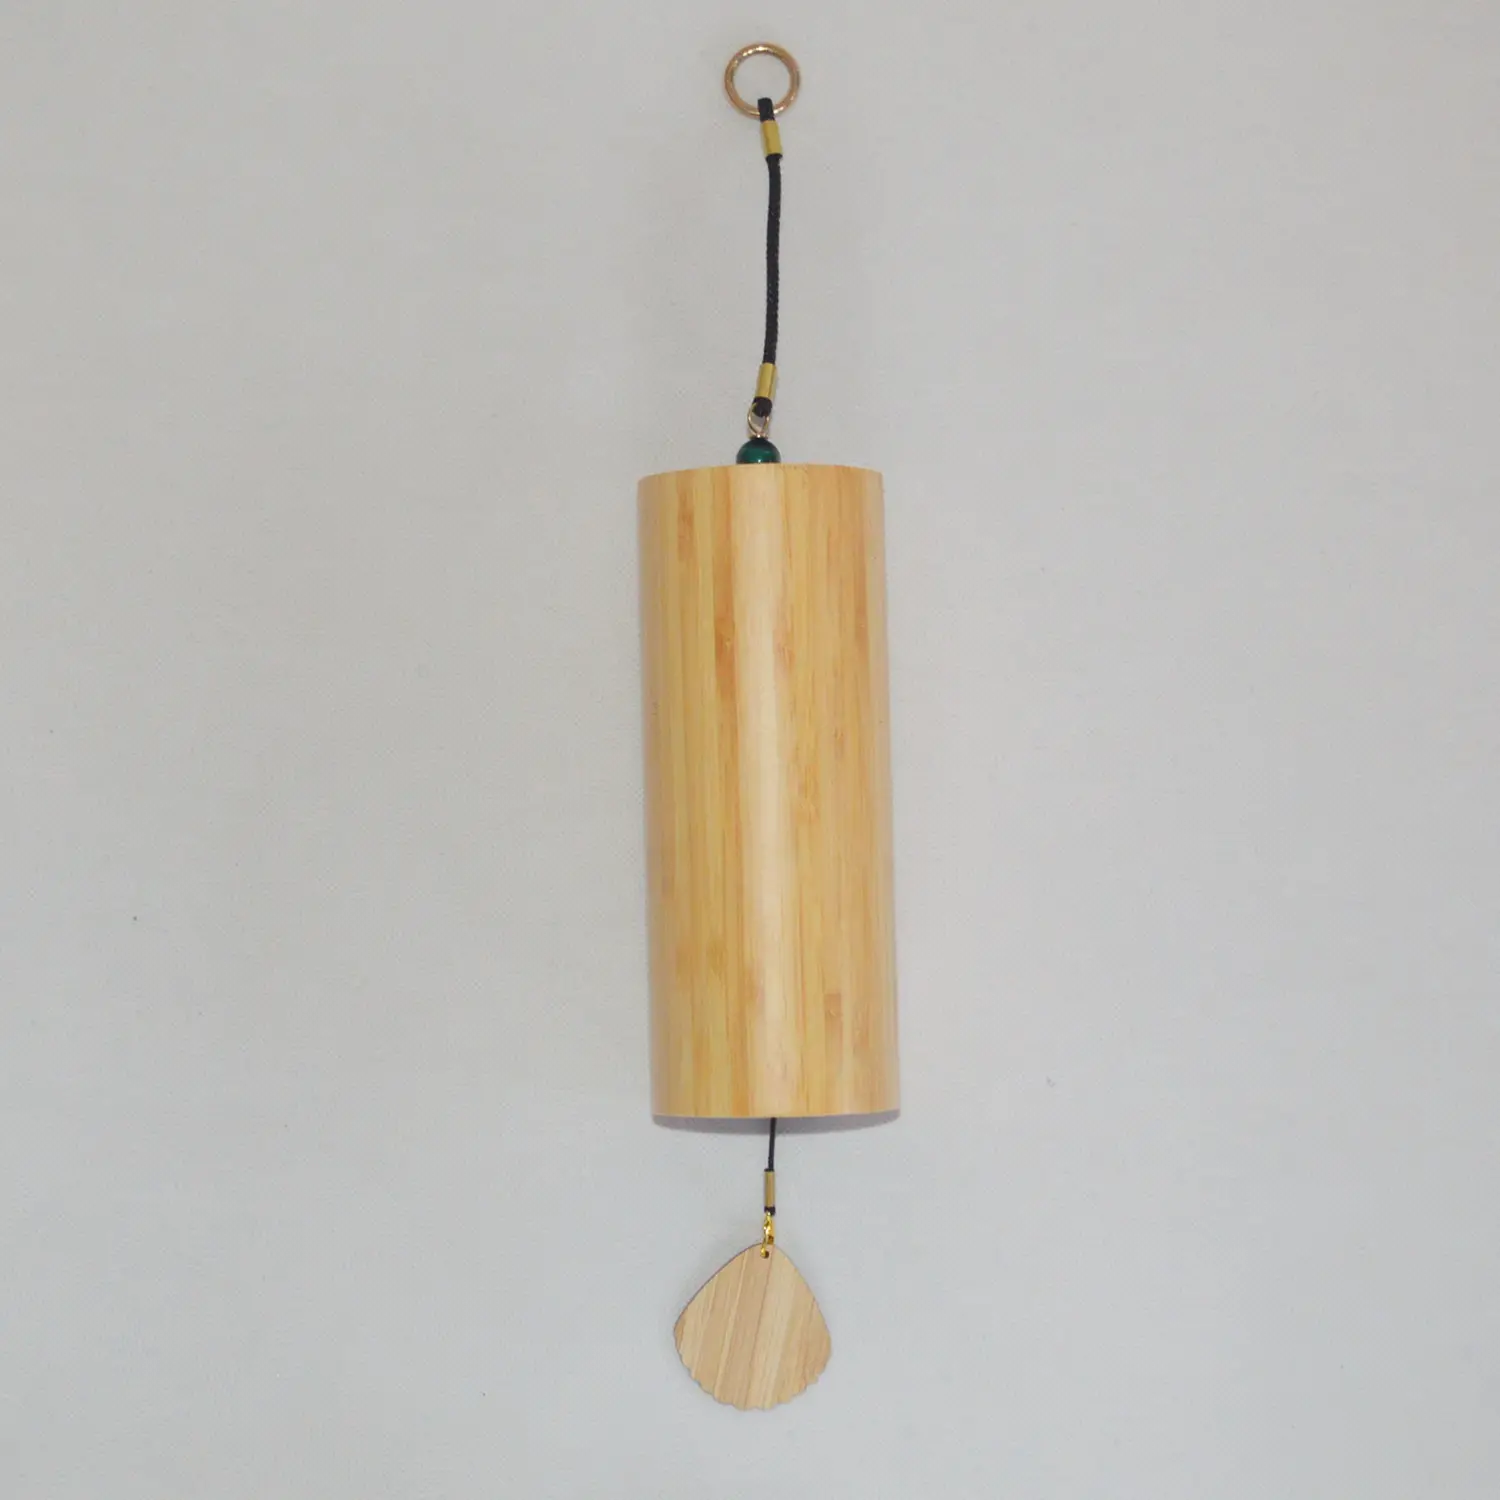 Cuerda de chacra Musical para Yoga, carillón de viento de bambú conmemorativo, campanas de viento de bambú para decoración del hogar, jardín y Patio